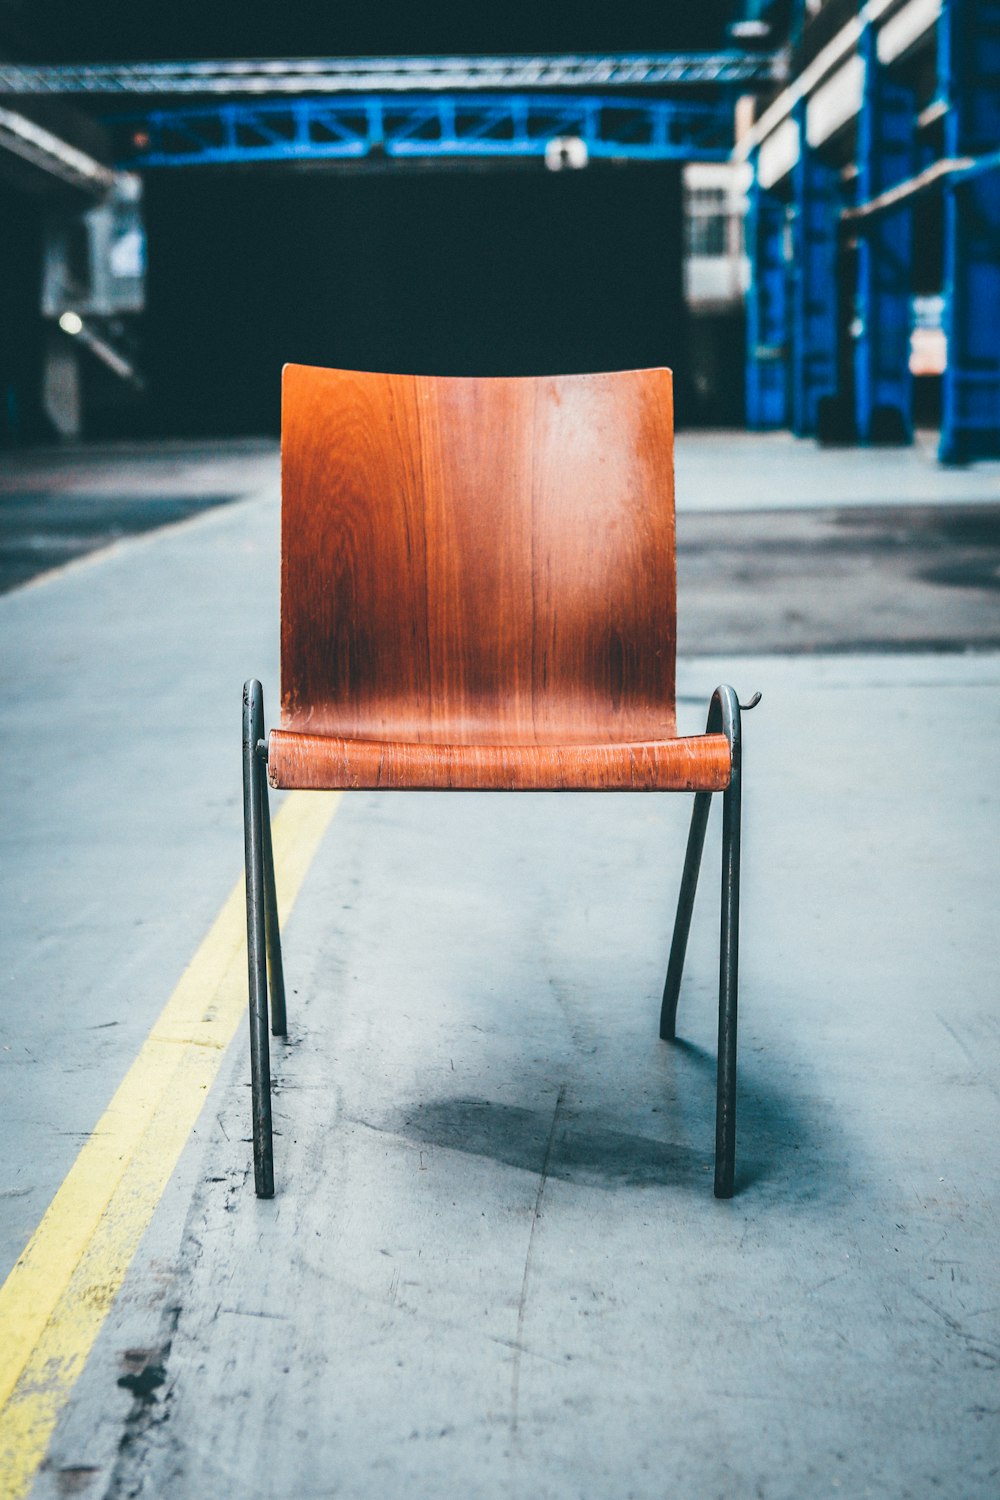 sedia in legno marrone con base in metallo nero su pavimento grigio